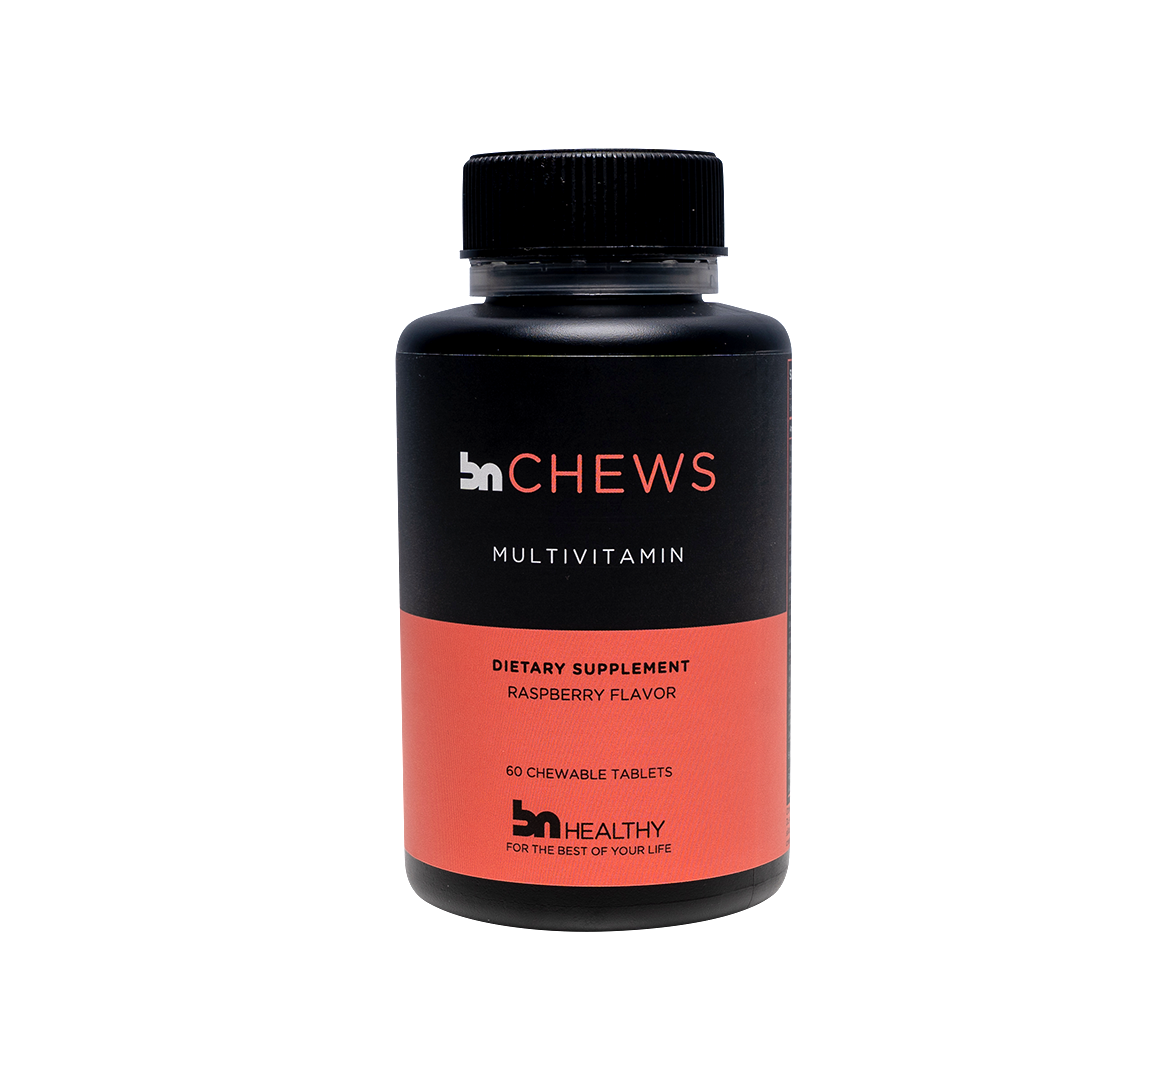 BN Chews Bariatric Multivitamin Bottle